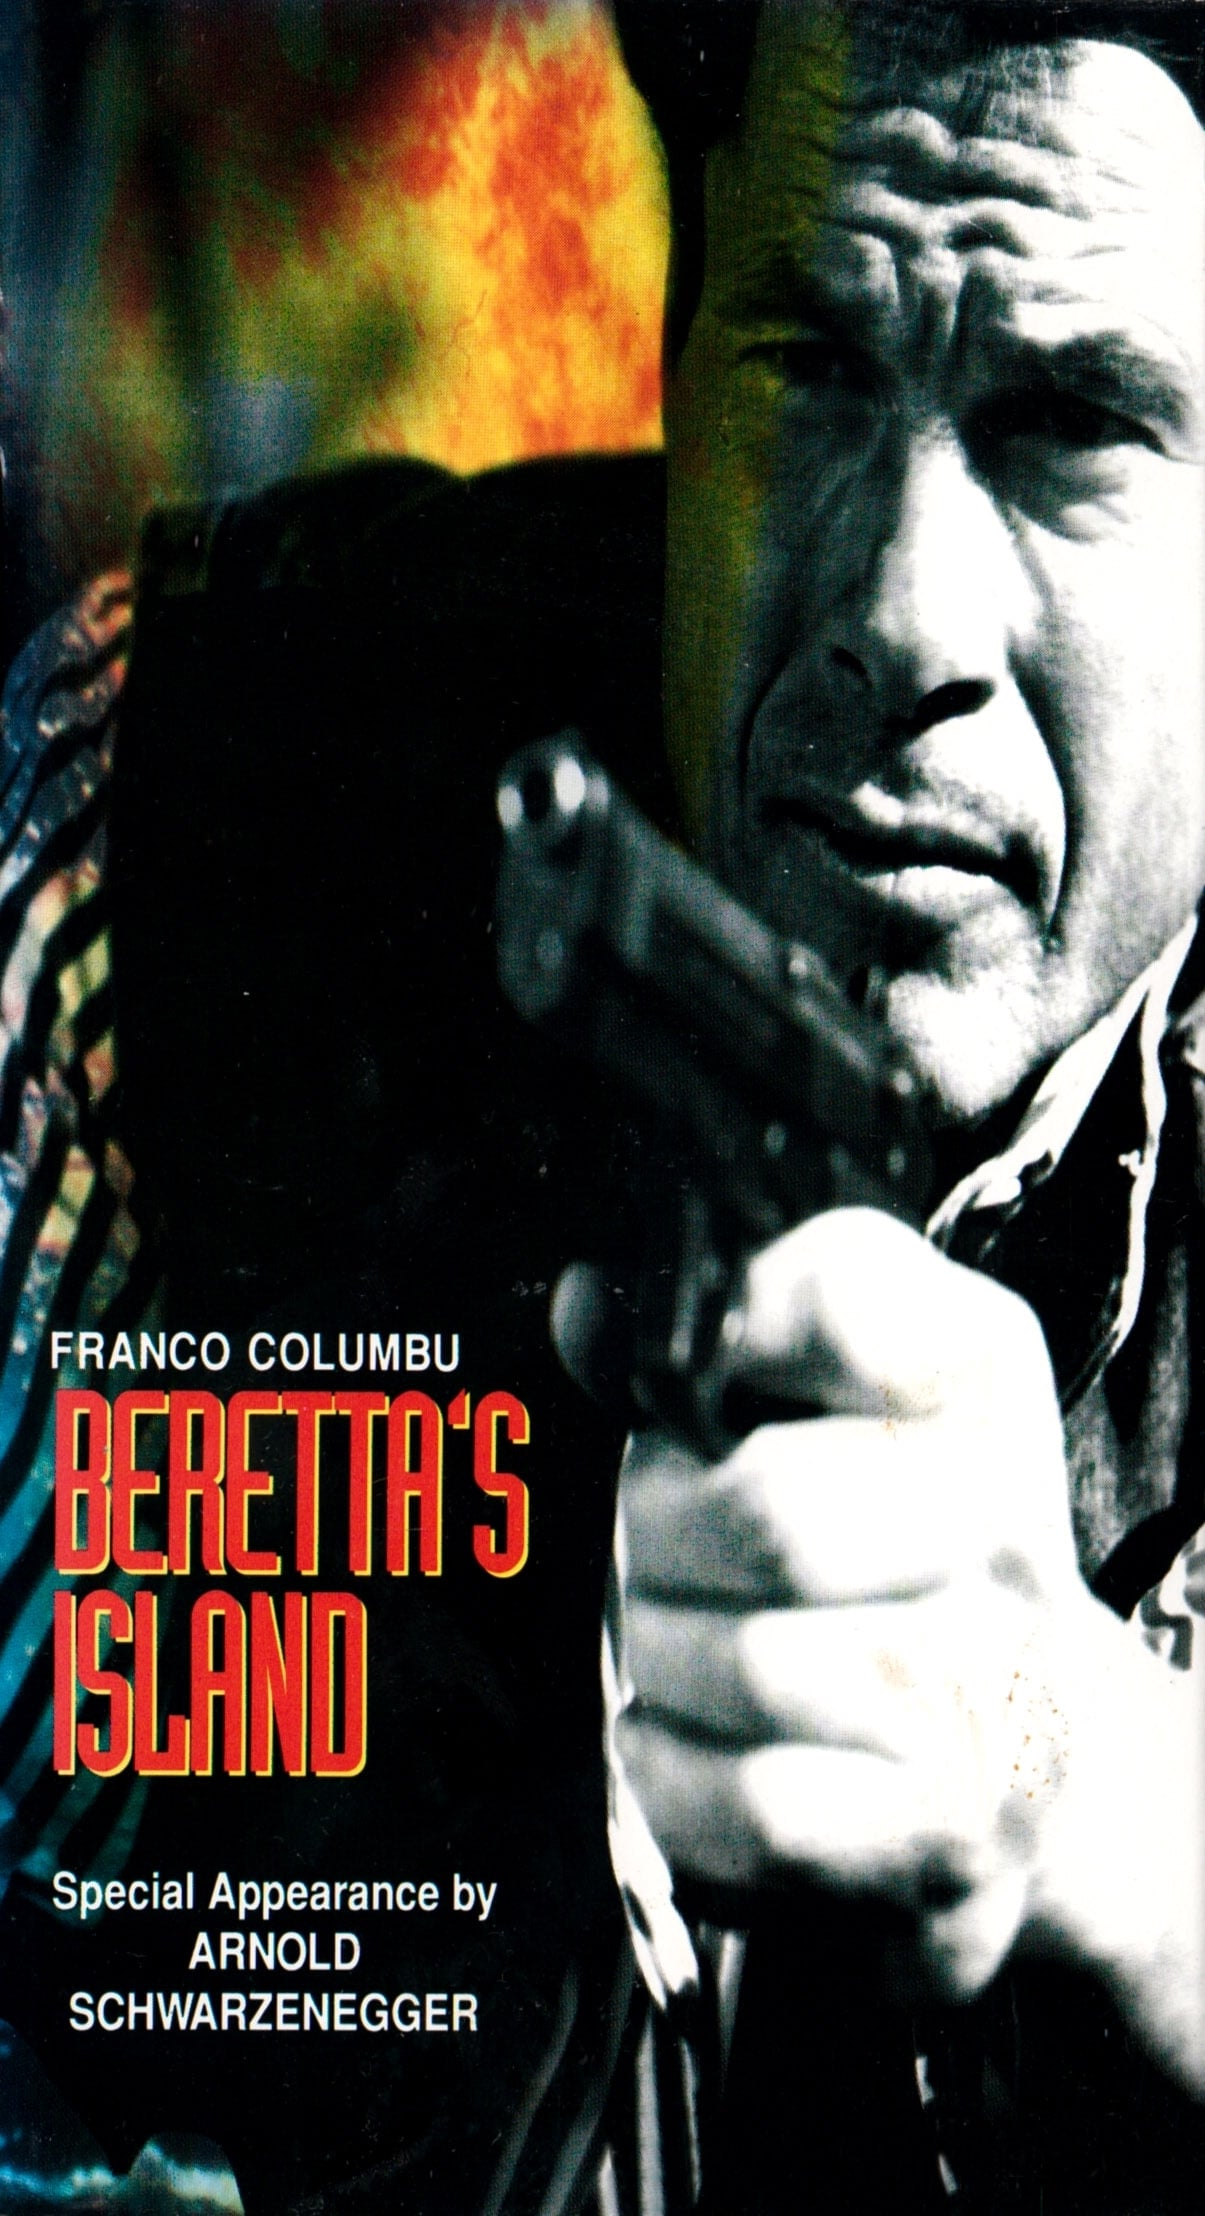 Beretta's Island (1994)